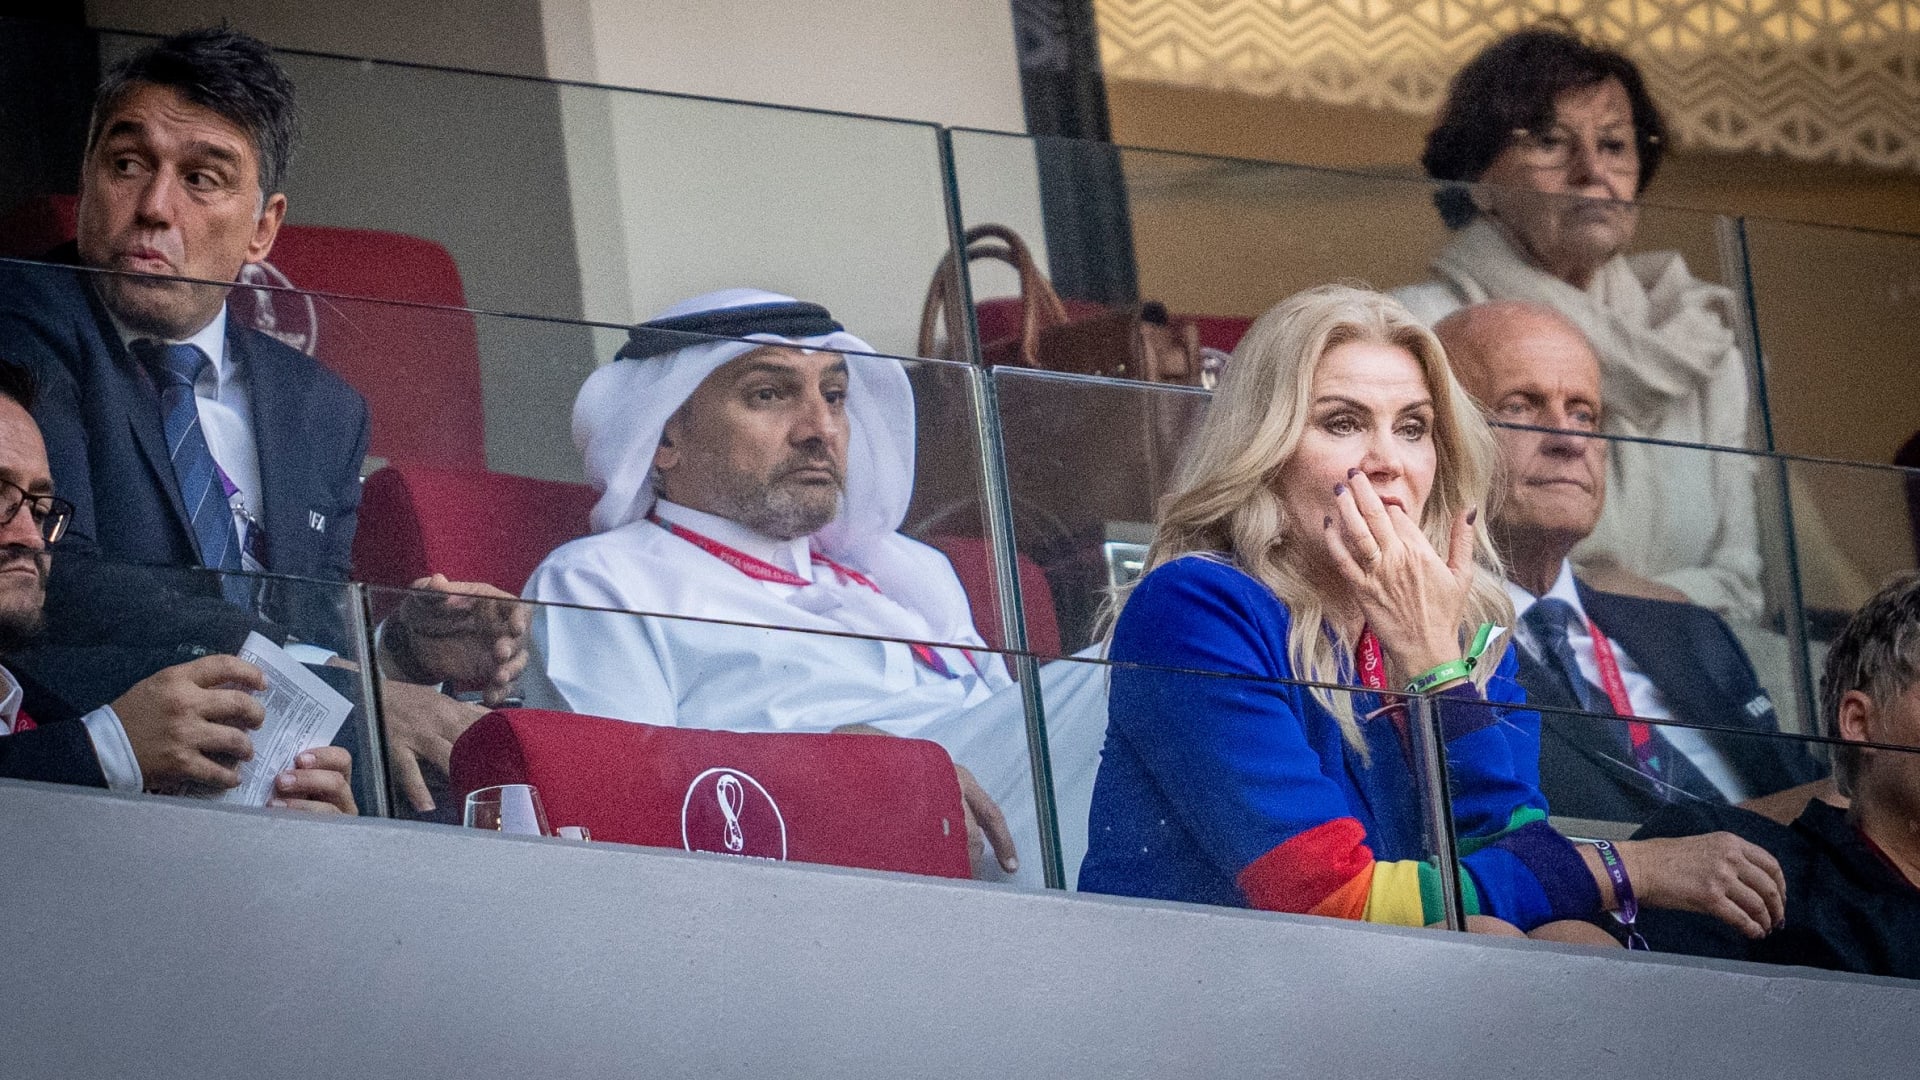 ترتدي رئيسة الوزراء الدنماركية السابقة هيلي ثورنينغ شميدت أكمام ملونة بألوان قوس قزح على ملابسها خلال مونديال قطر 2022